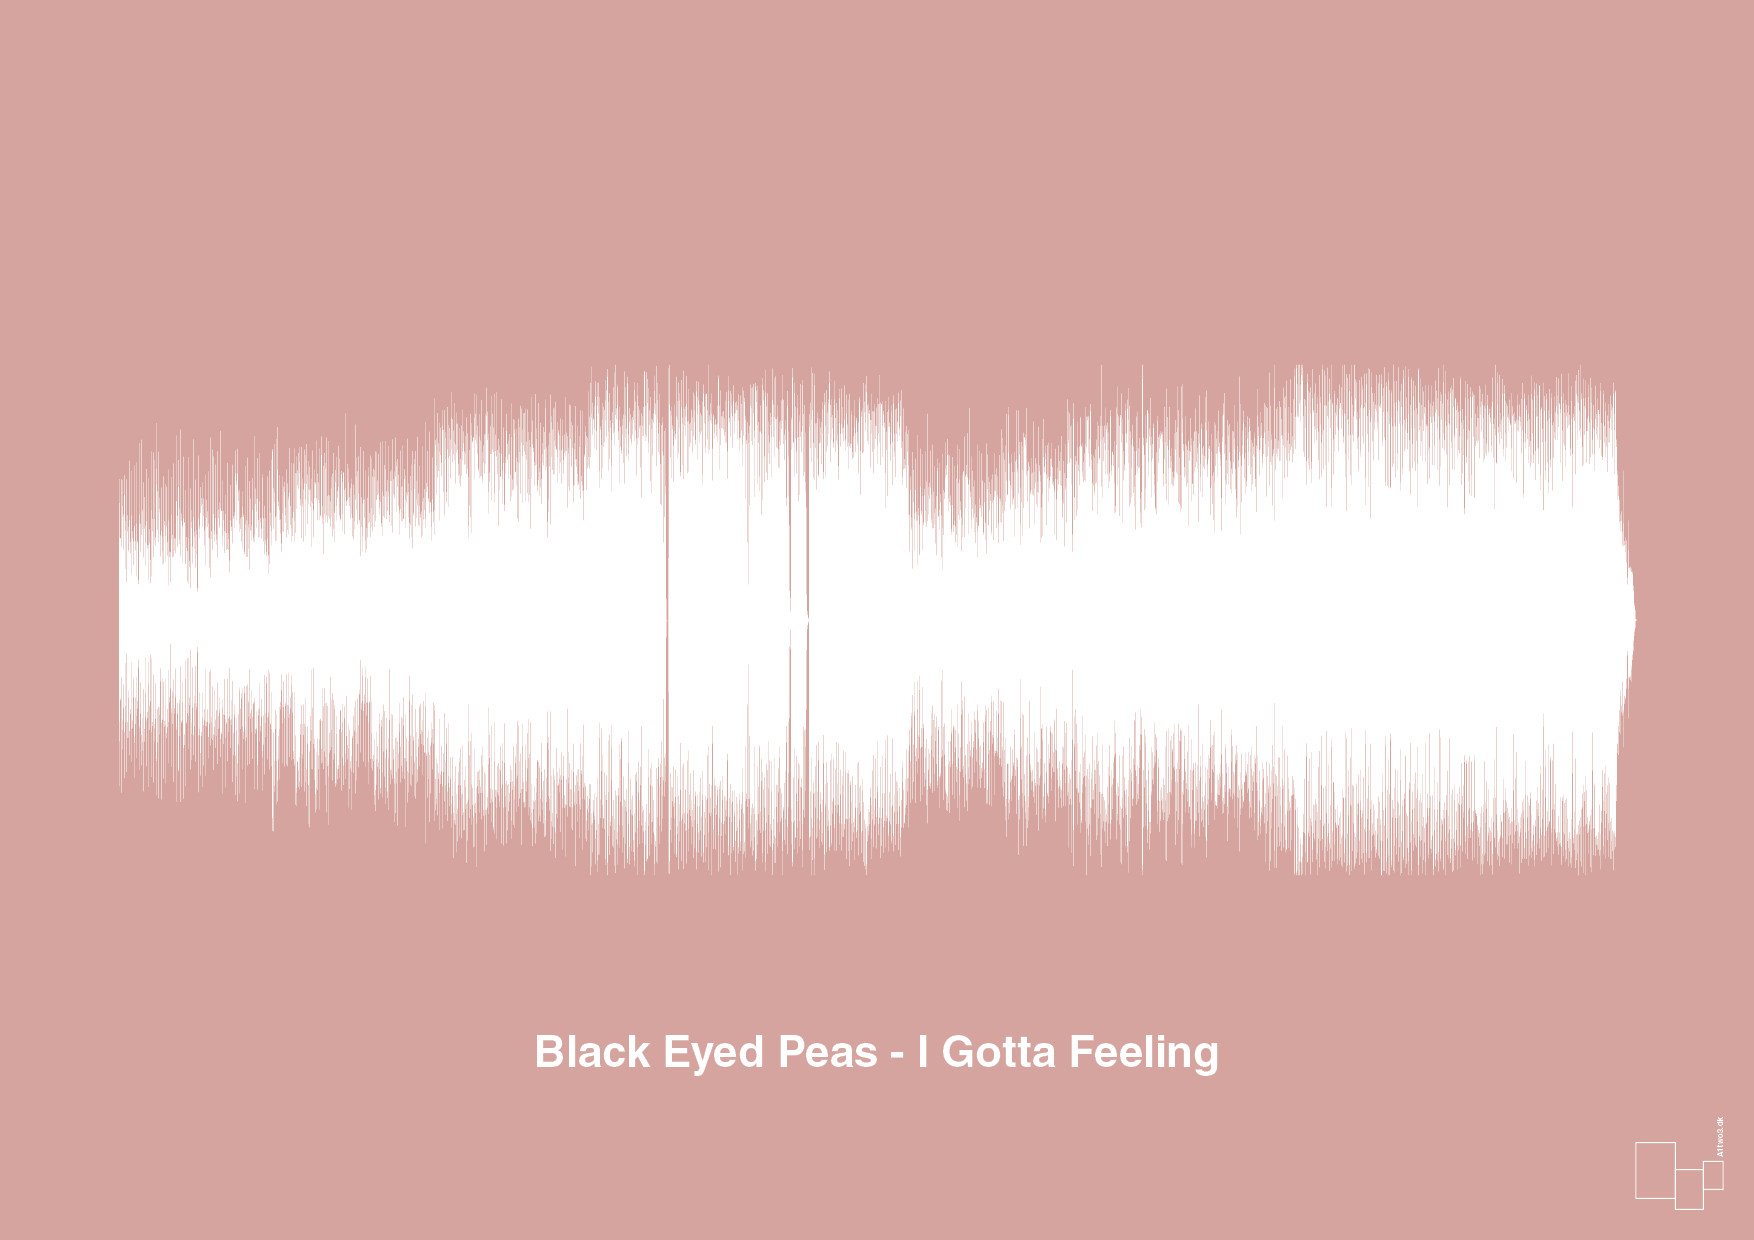 black eyed peas - i gotta feeling - Plakat med Musik i Bubble Shell